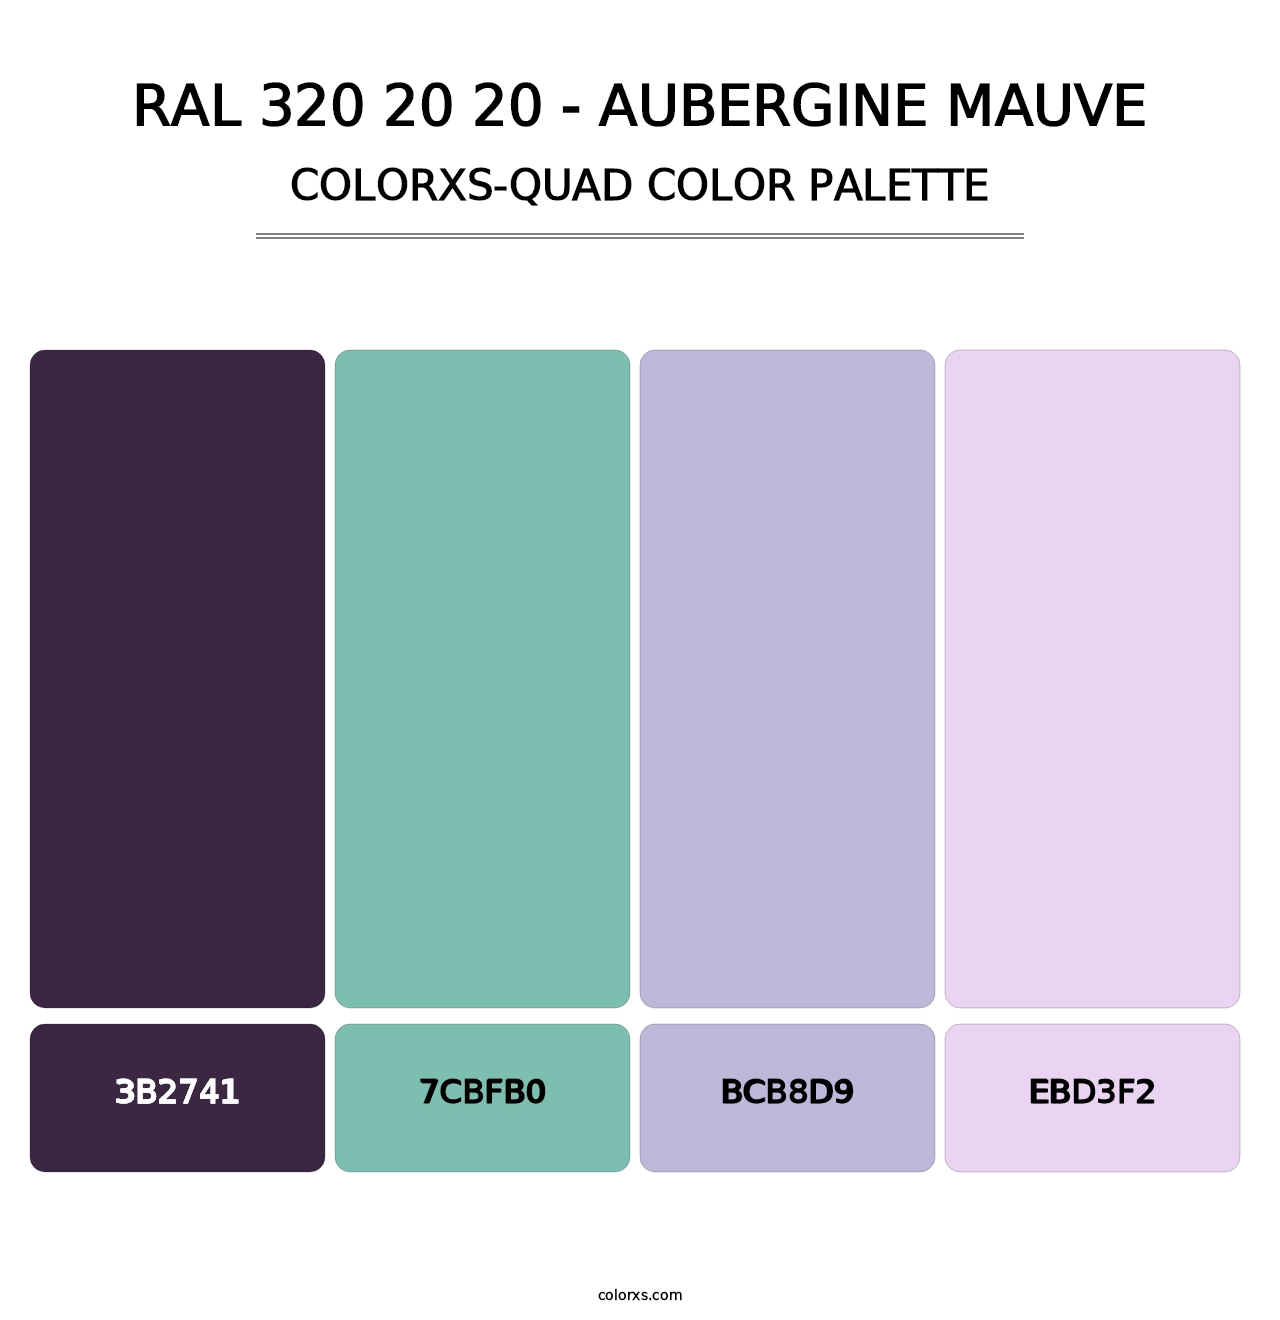 RAL 320 20 20 - Aubergine Mauve - Colorxs Quad Palette